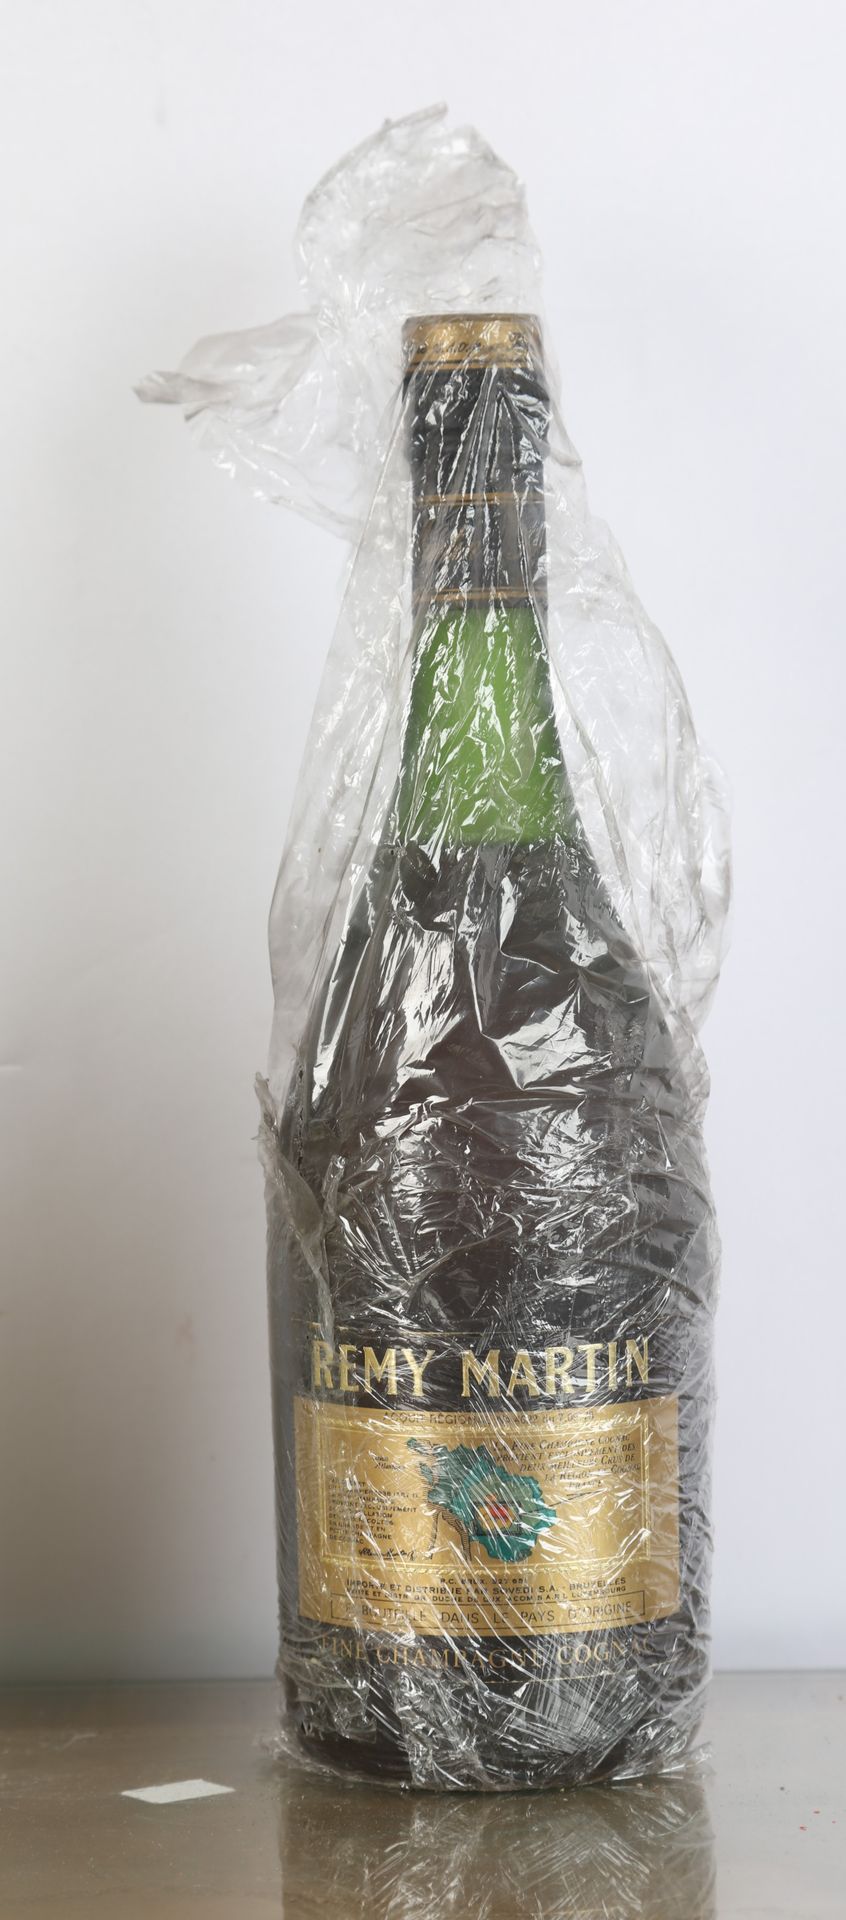 Null Cognac, Rémy Martin, (ref 2) und - 1 Flasche Dry Gin Gordons, (ref 2)